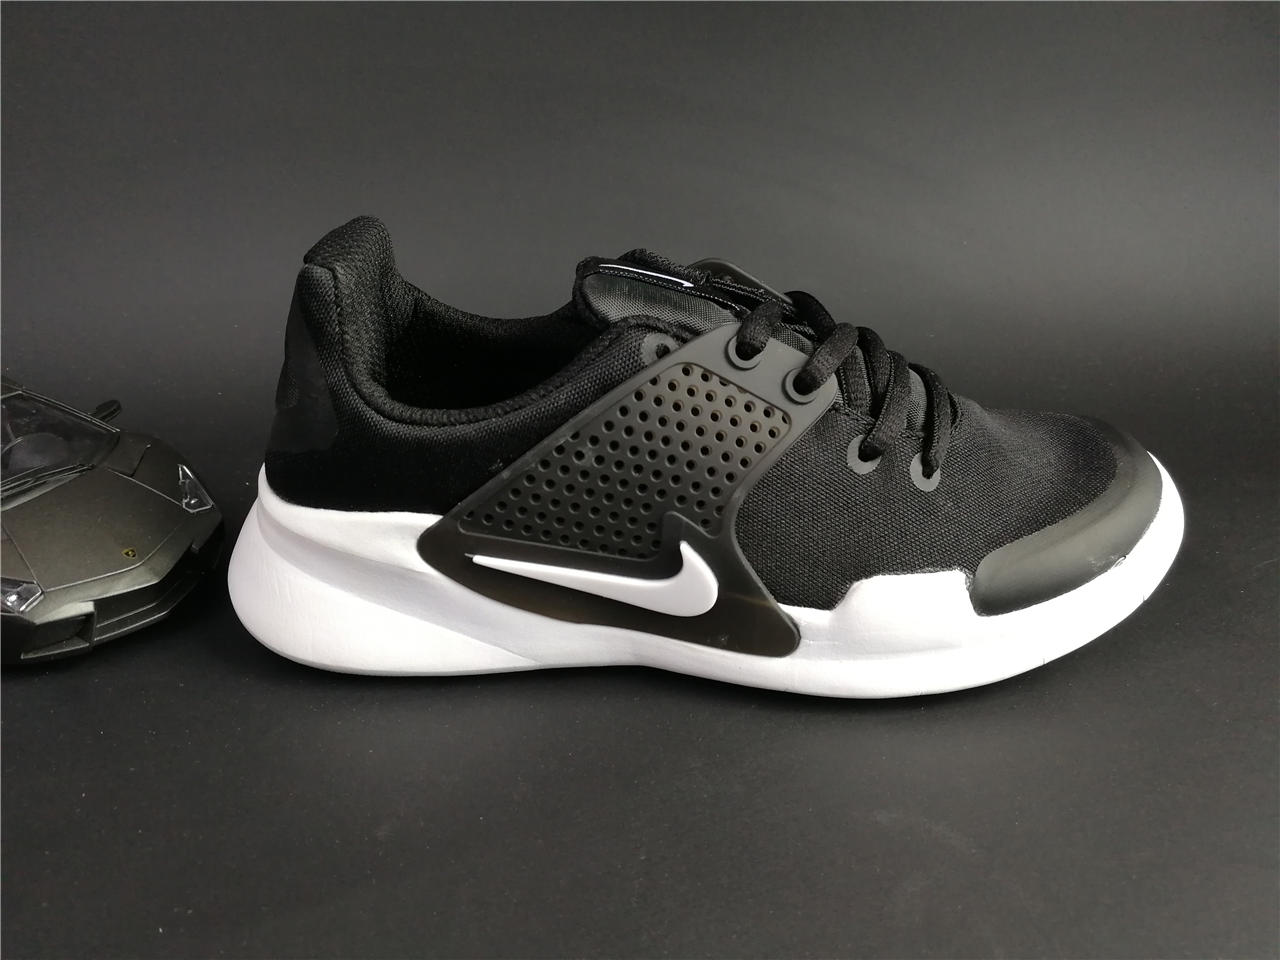 New Nike Air Presto IV Mesh Black White